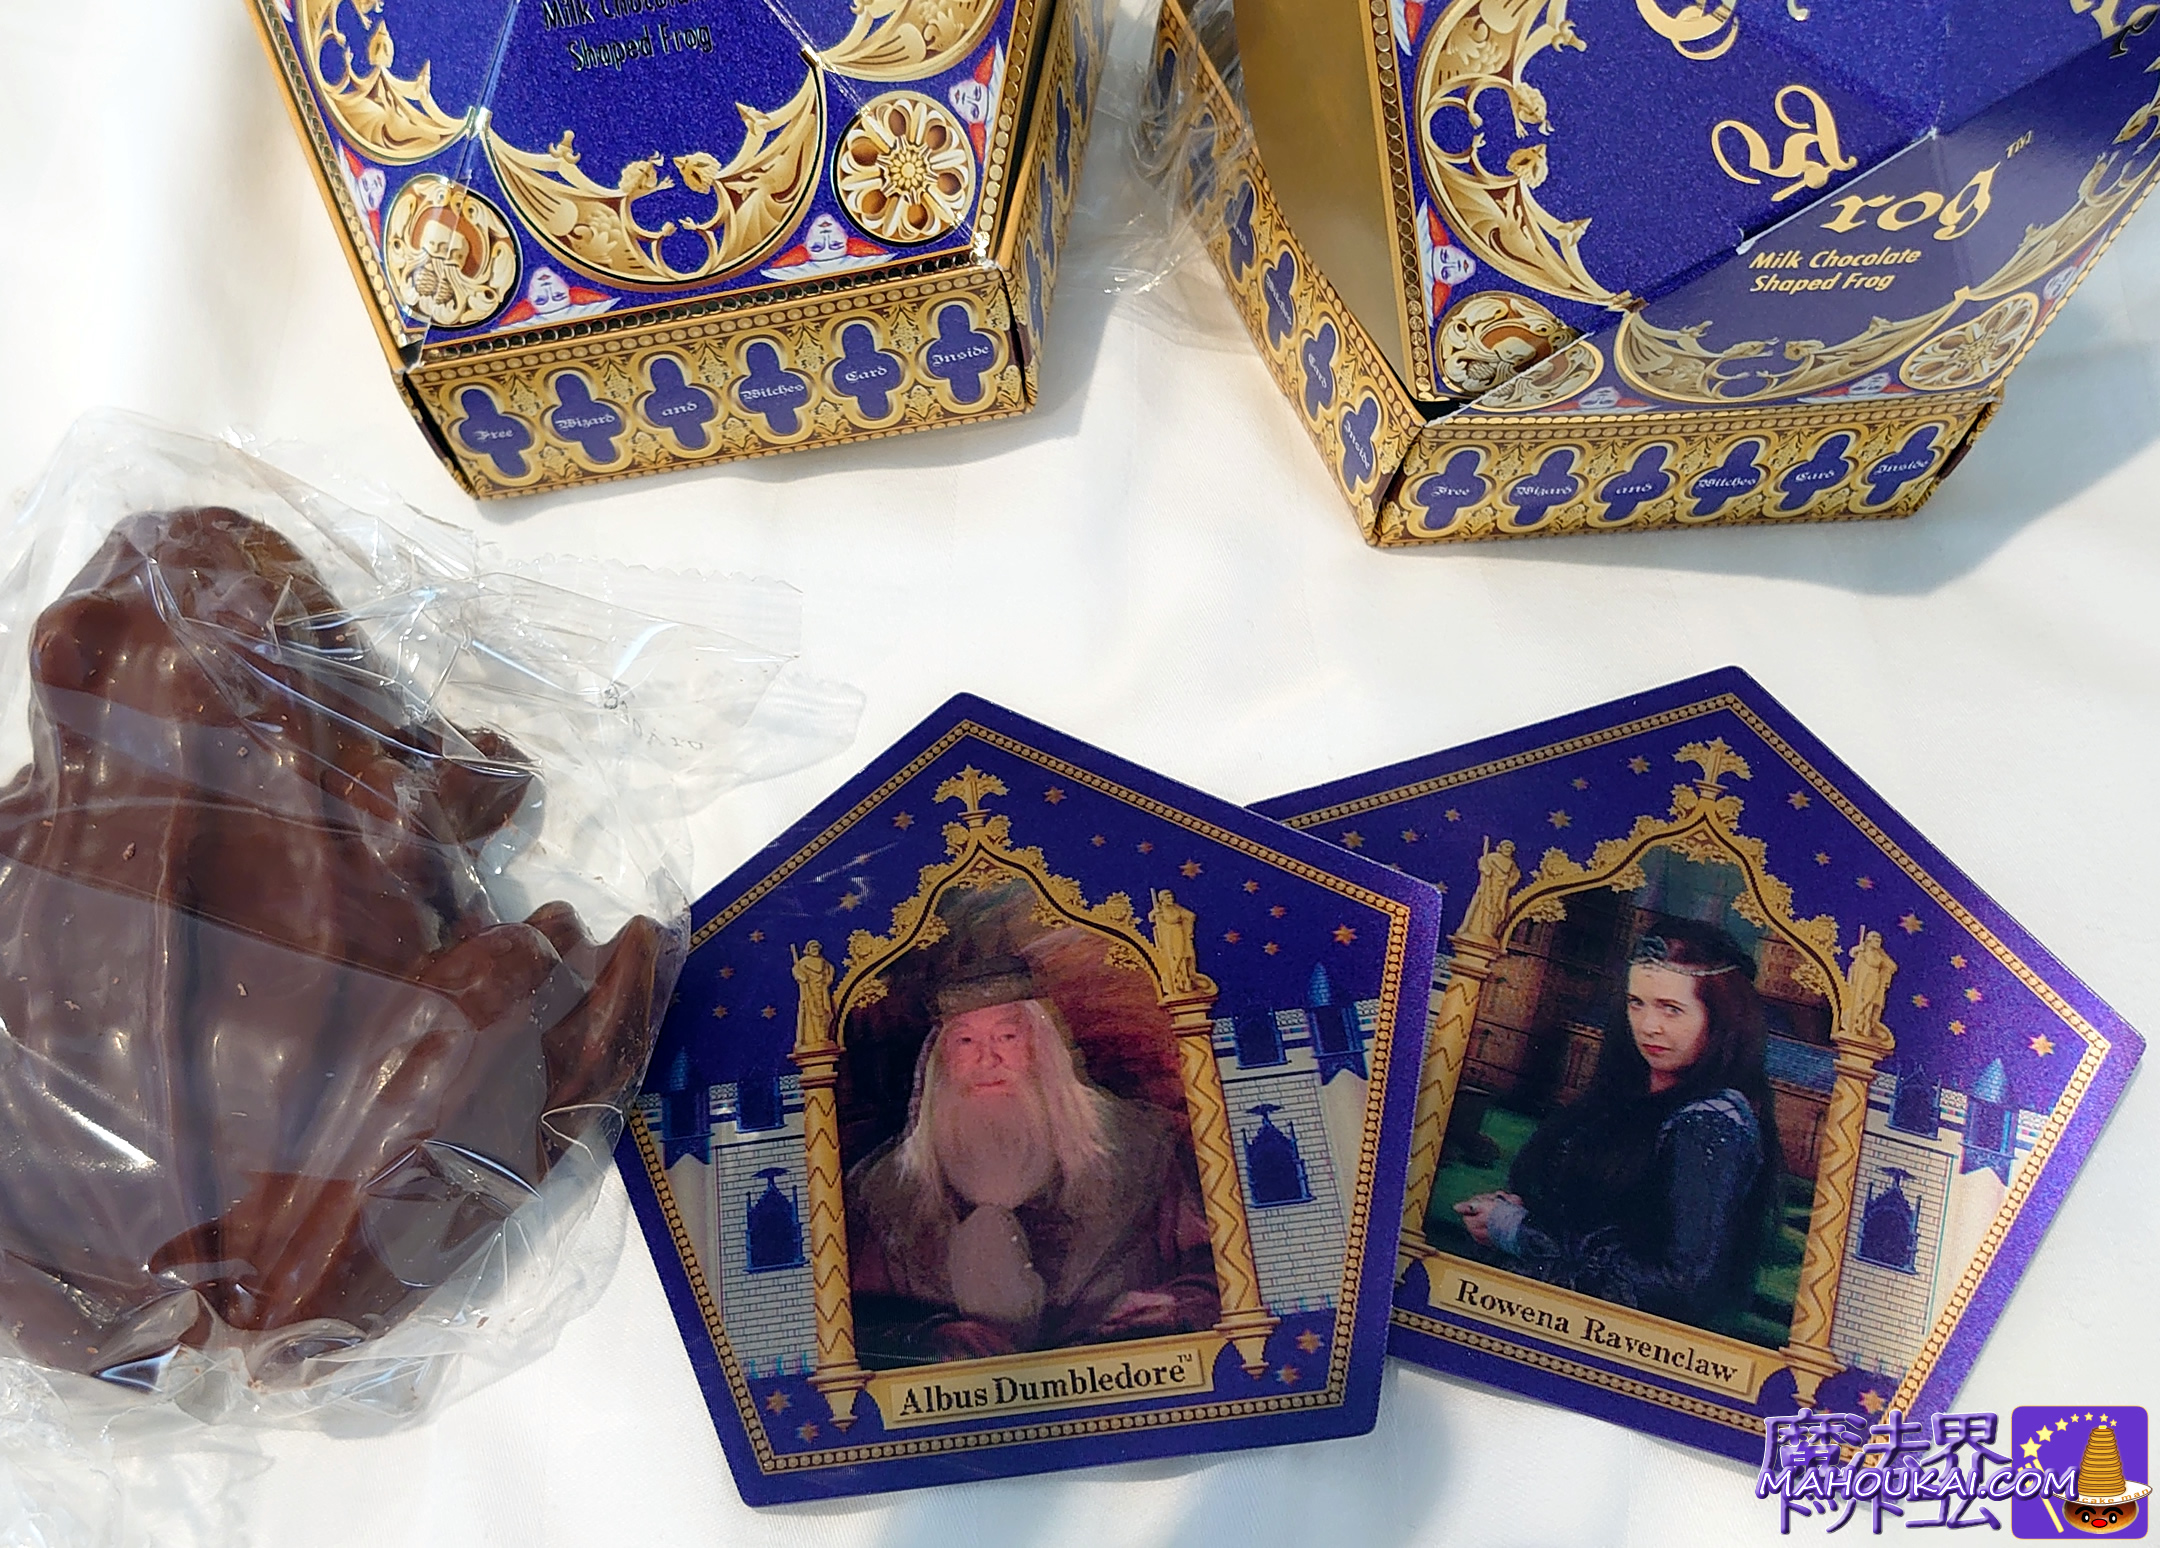 USJで購入した 蛙チョコレート の中身とパッケージとオマケの魔法使いカード ダンブルドア校長、ロウェナ・レイブンクロー